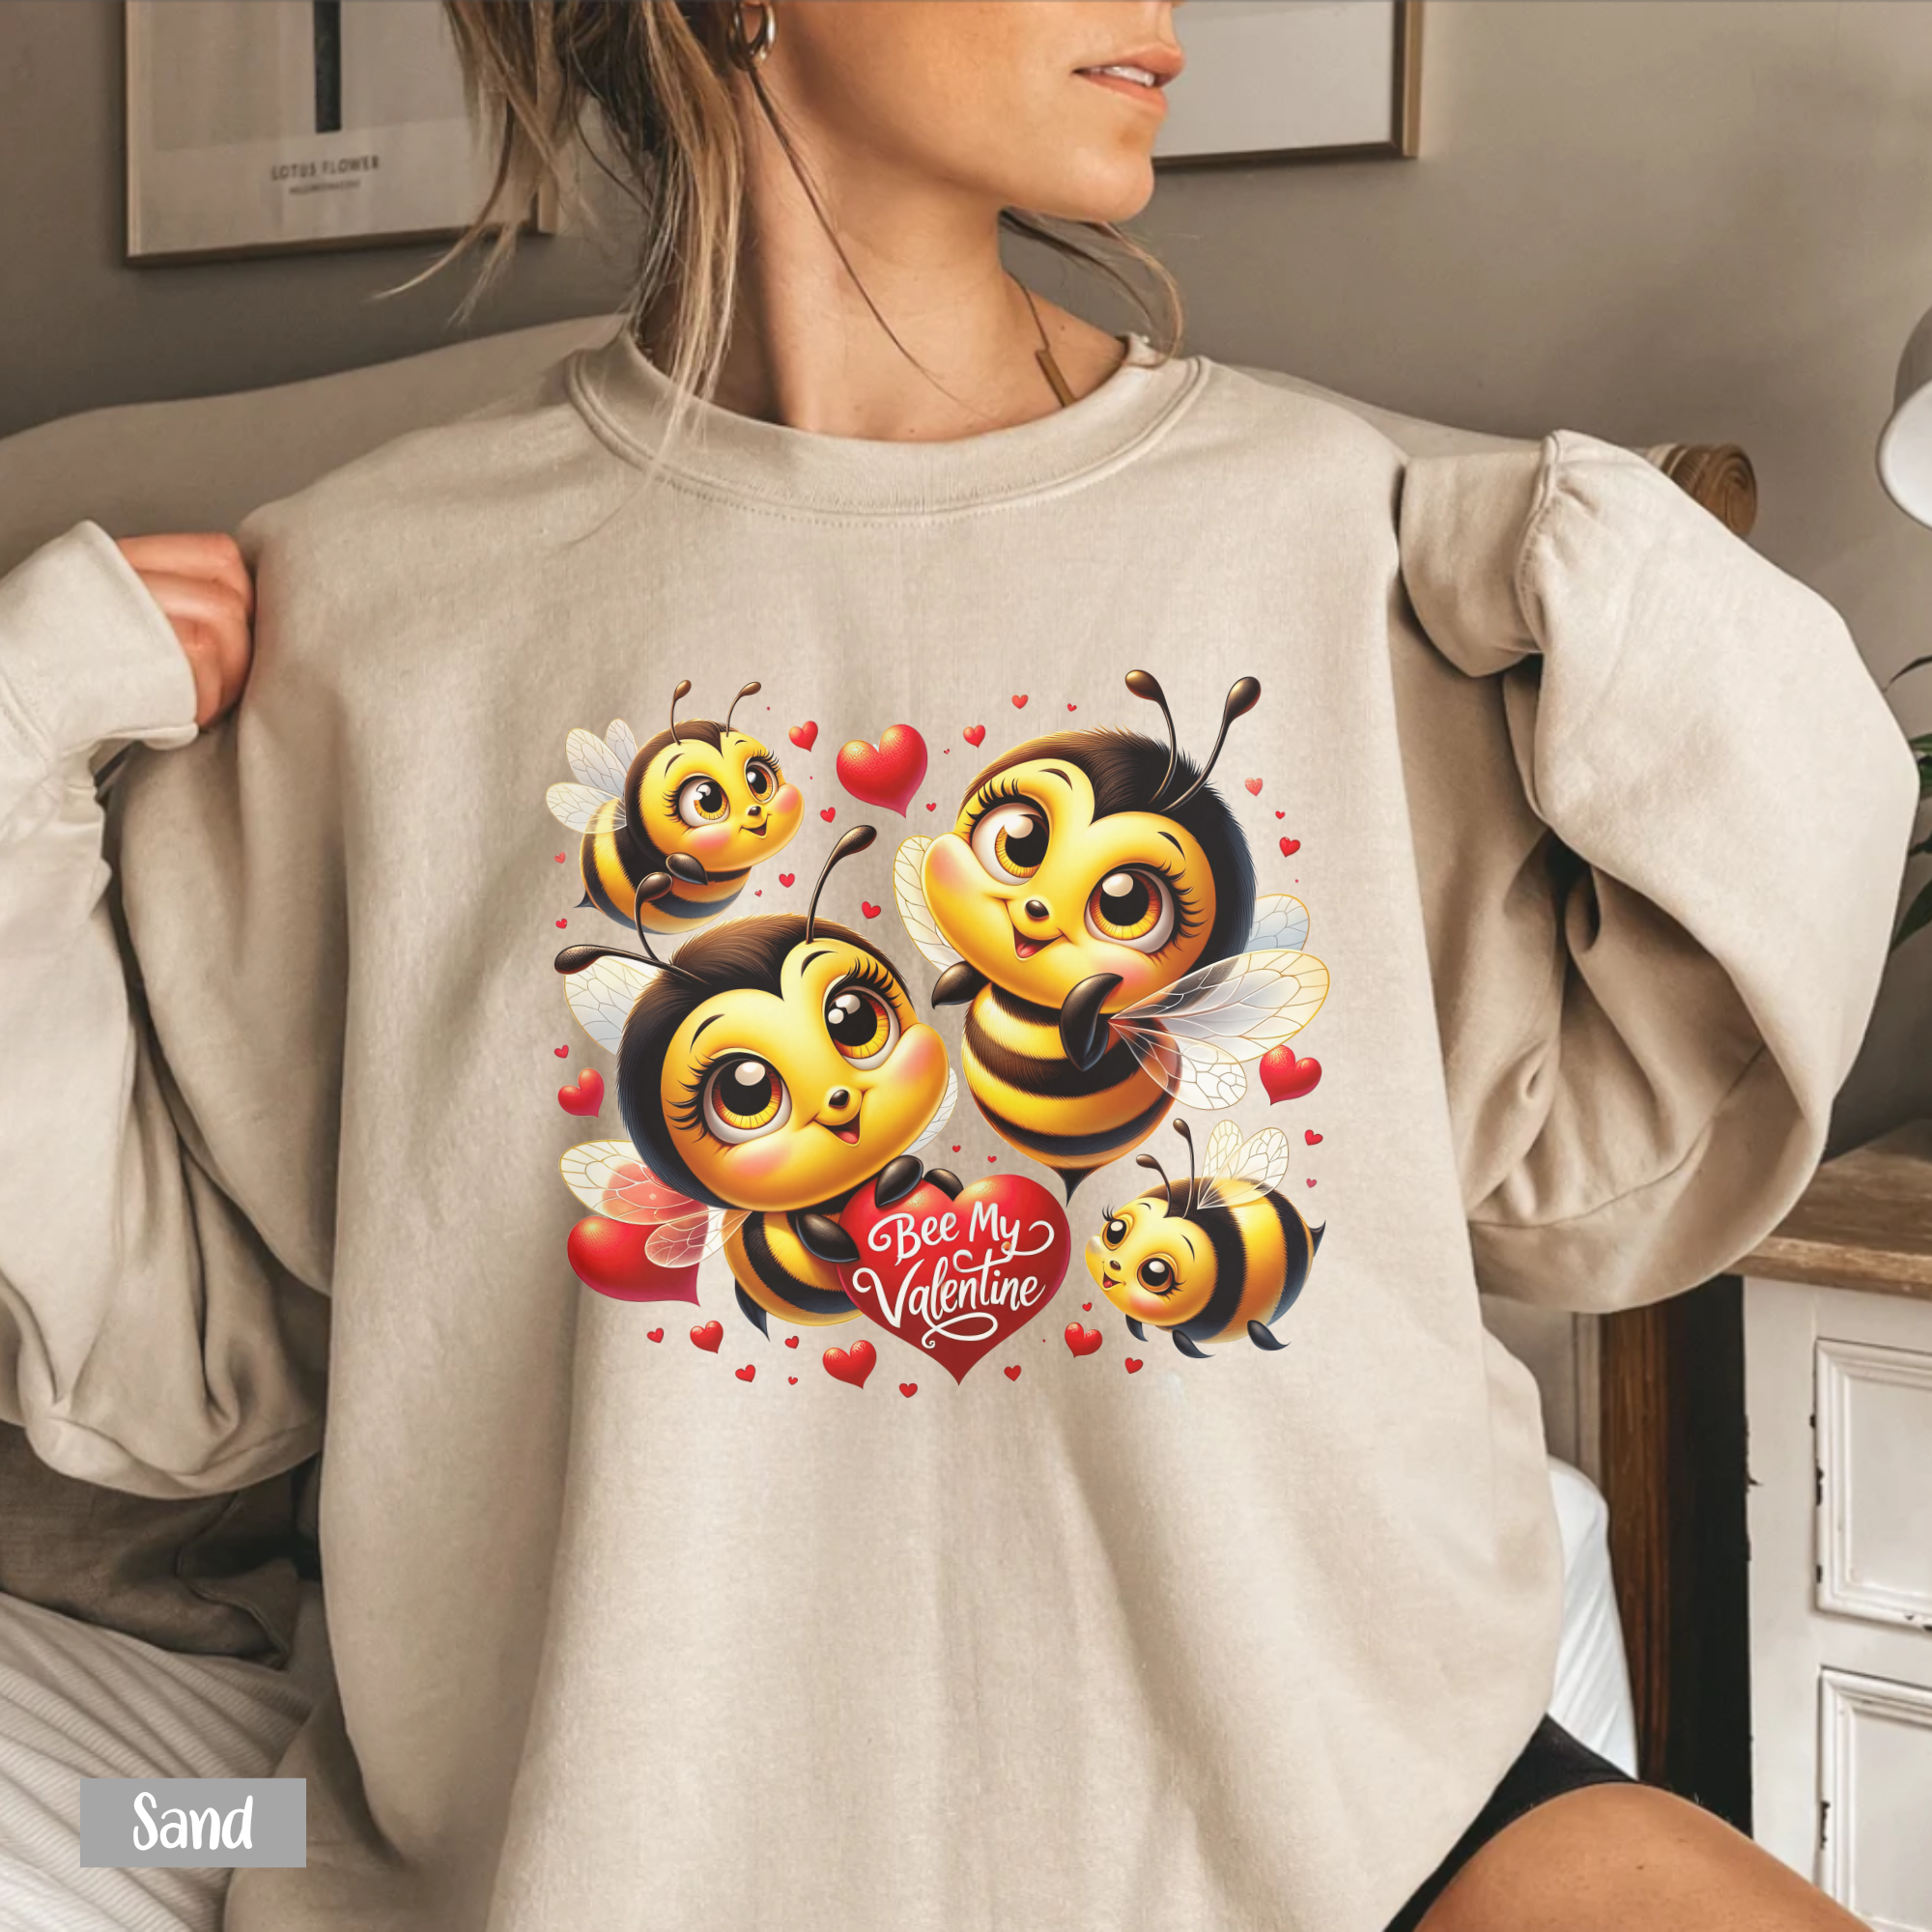 Bee Mine Valentine Shirt - Gift For Valentine's